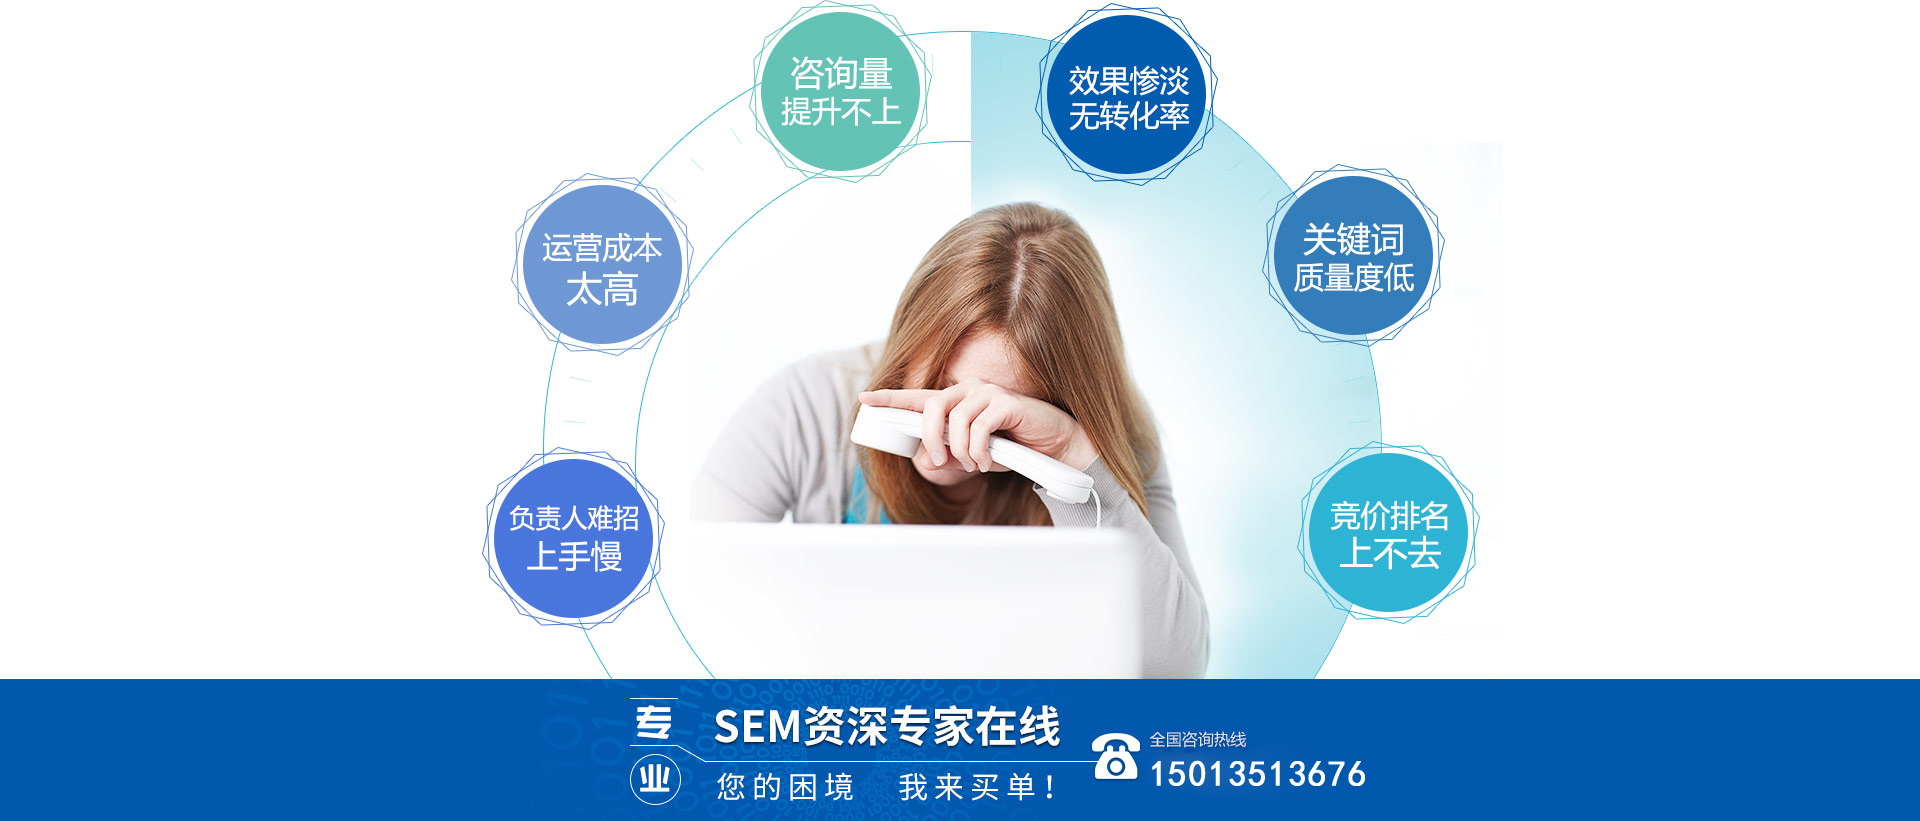 深圳SEM竞价账户托管外包公司帮你处理各种优化难题